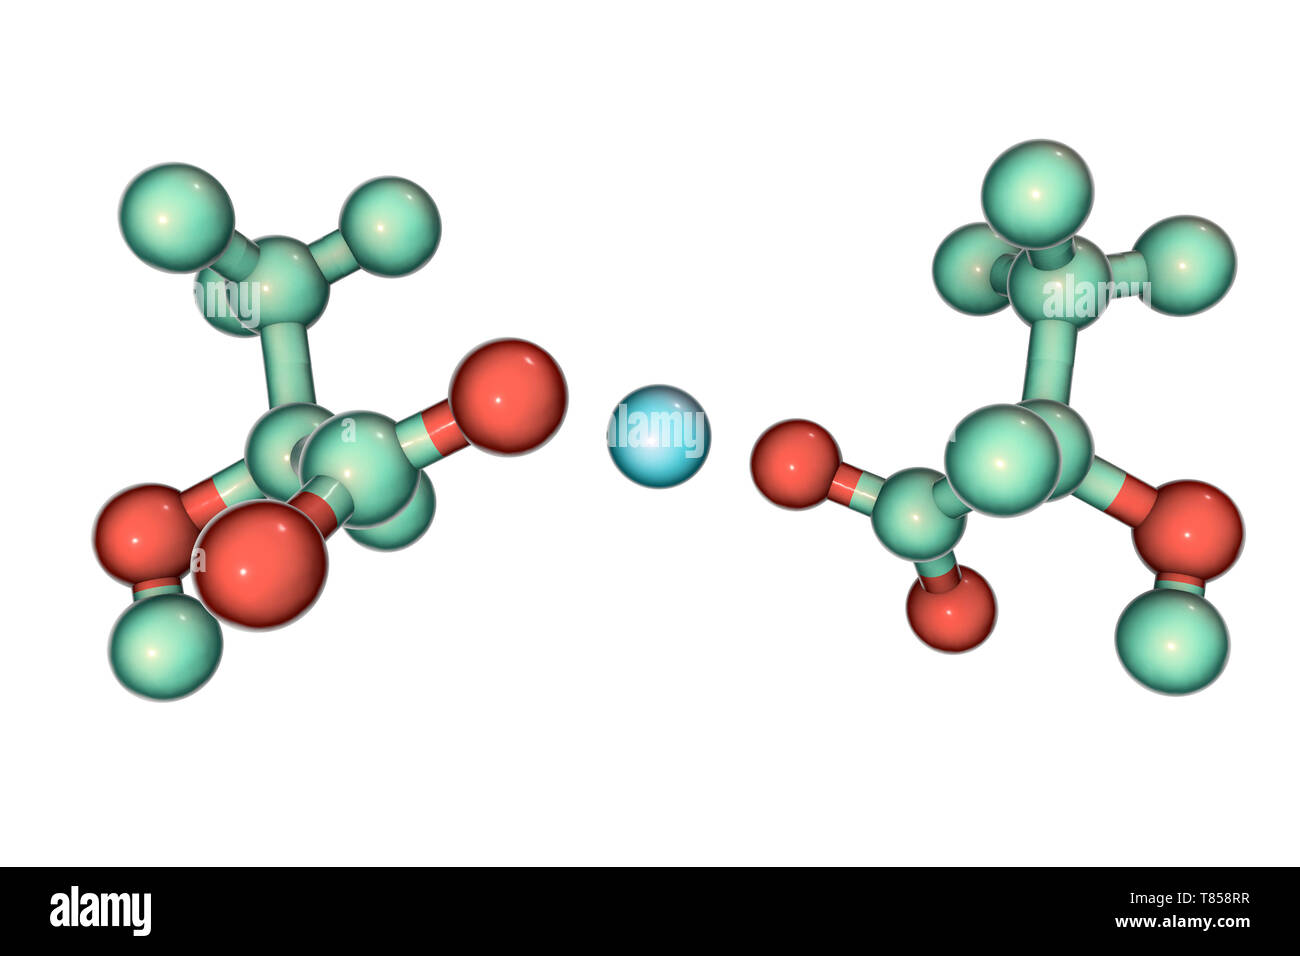 Calcium lactate, molecular model Stock Photo